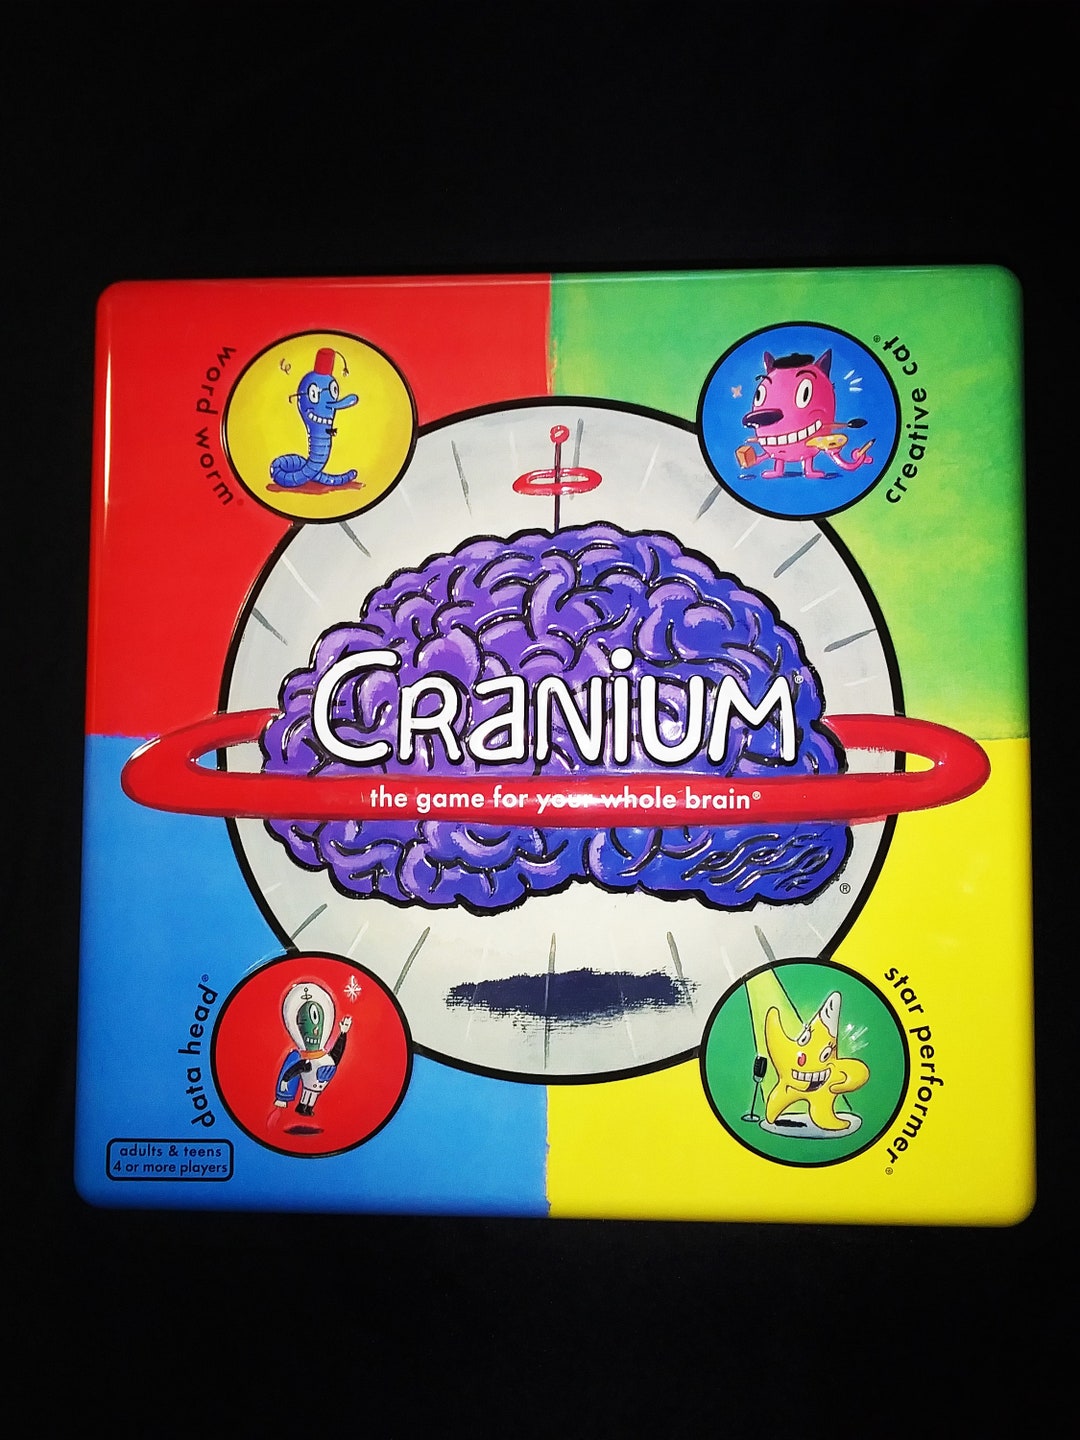 Cranium Game Rules and Instructions - How Cranium Works